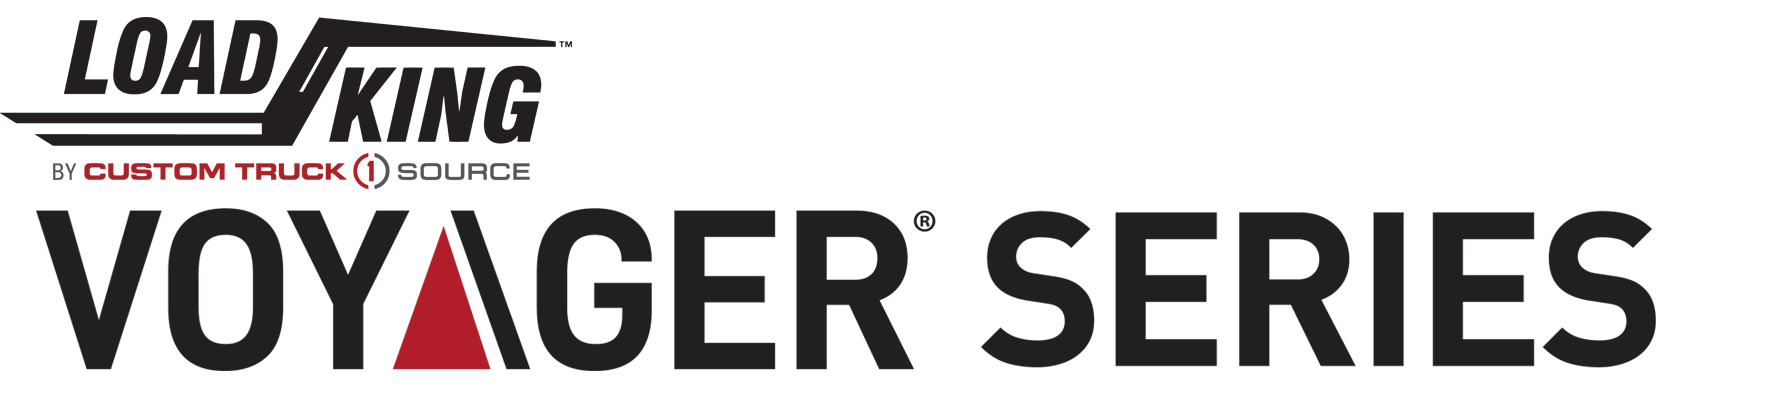 LK Voyager Series Logo2